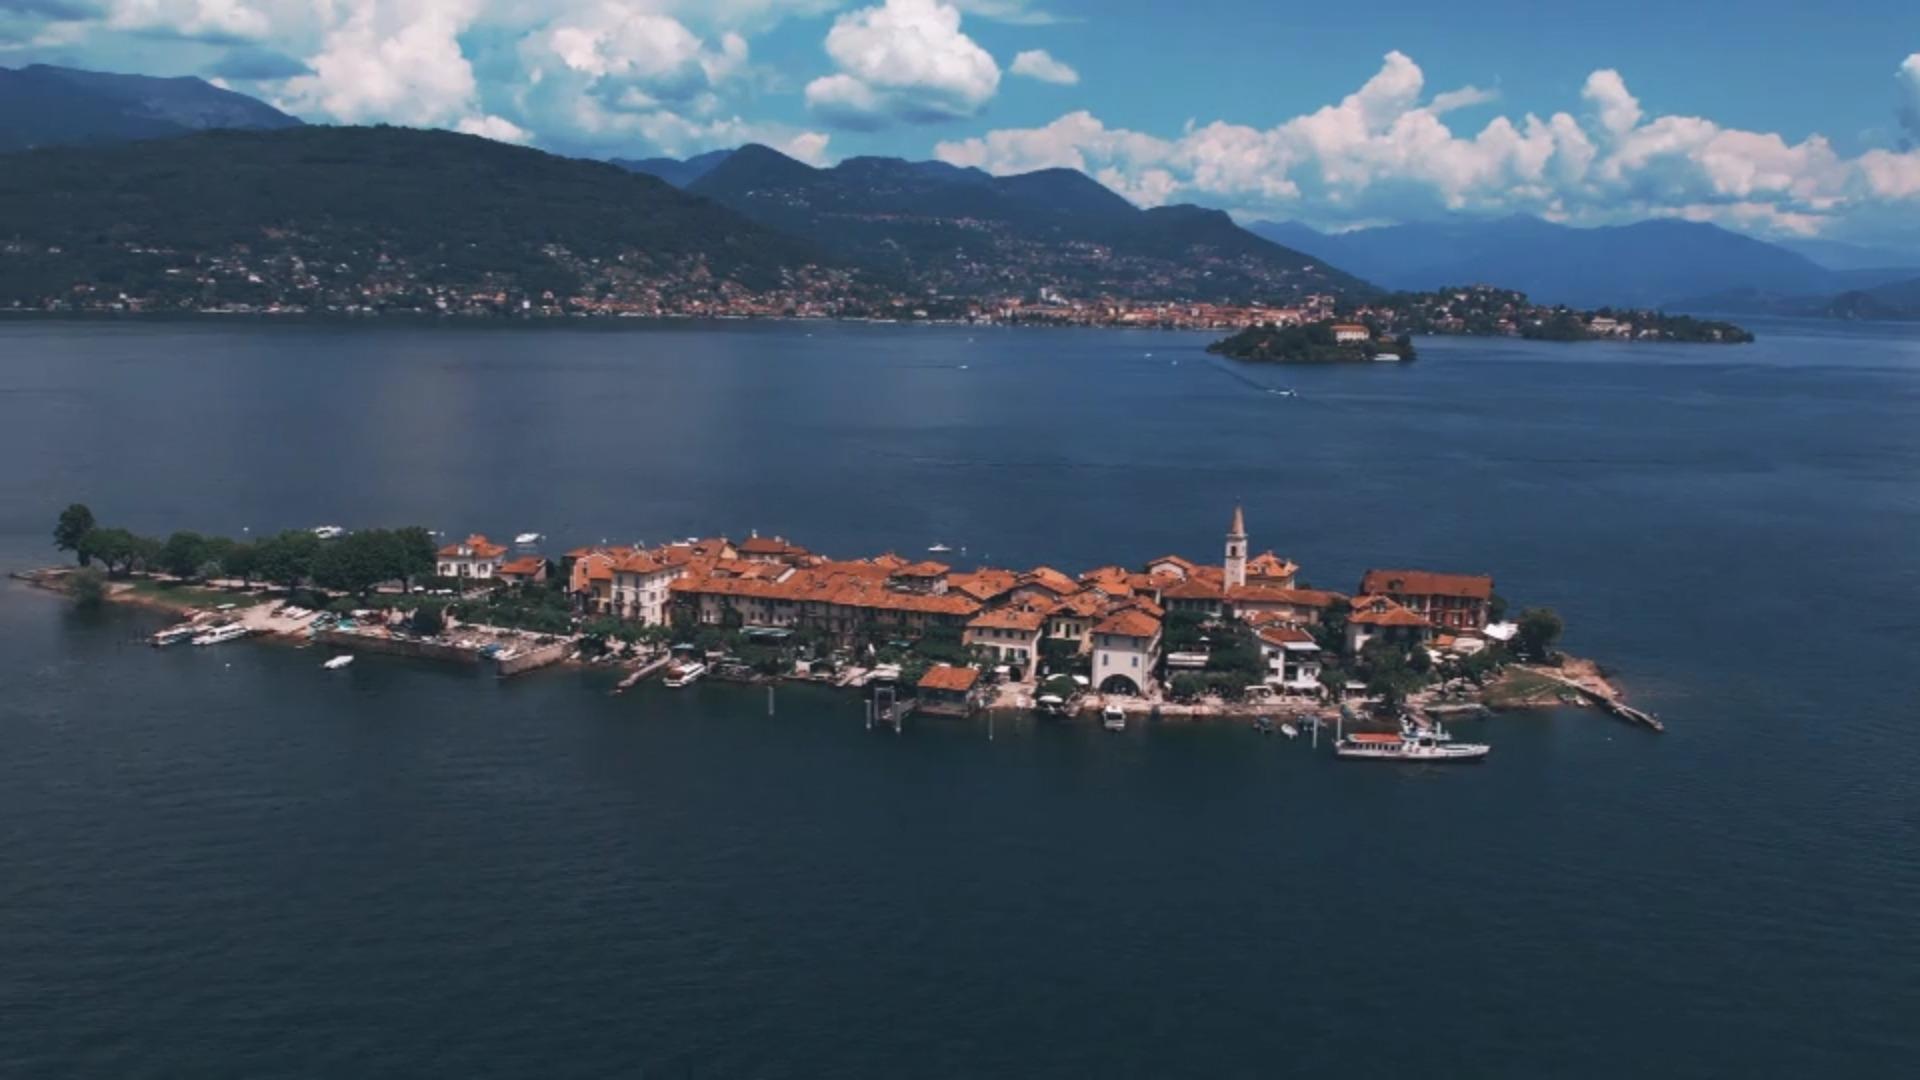 Misterioso: ¿qué pasó exactamente en el lago Maggiore?  El barco de excursión volcó